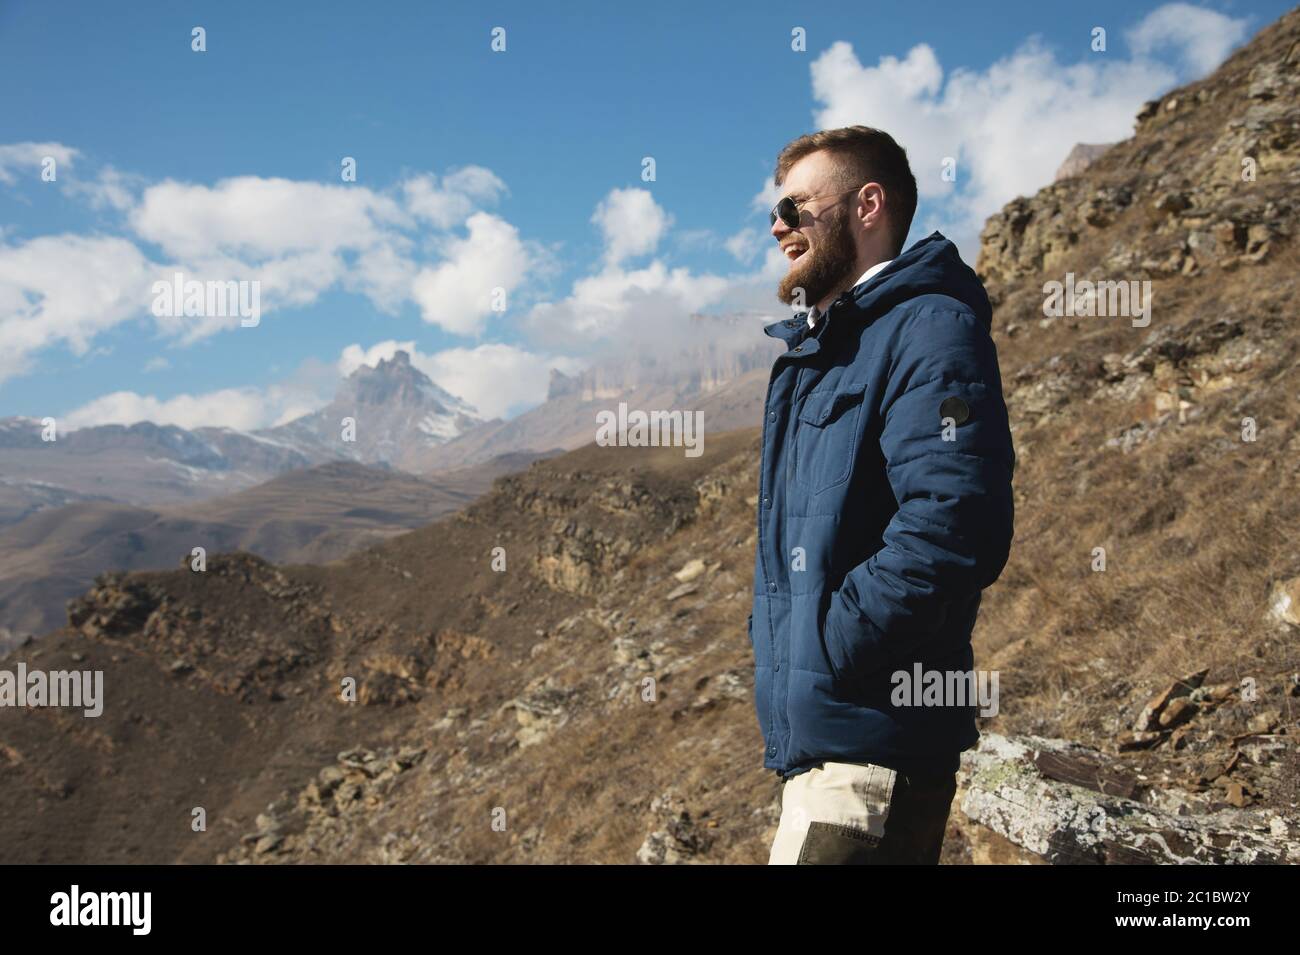 Hipster-Reisende in Daunenjacke und Sonnenbrille steht auf einem Berghang  vor der Kulisse epischer Felsen und lächelt. Die c Stockfotografie - Alamy